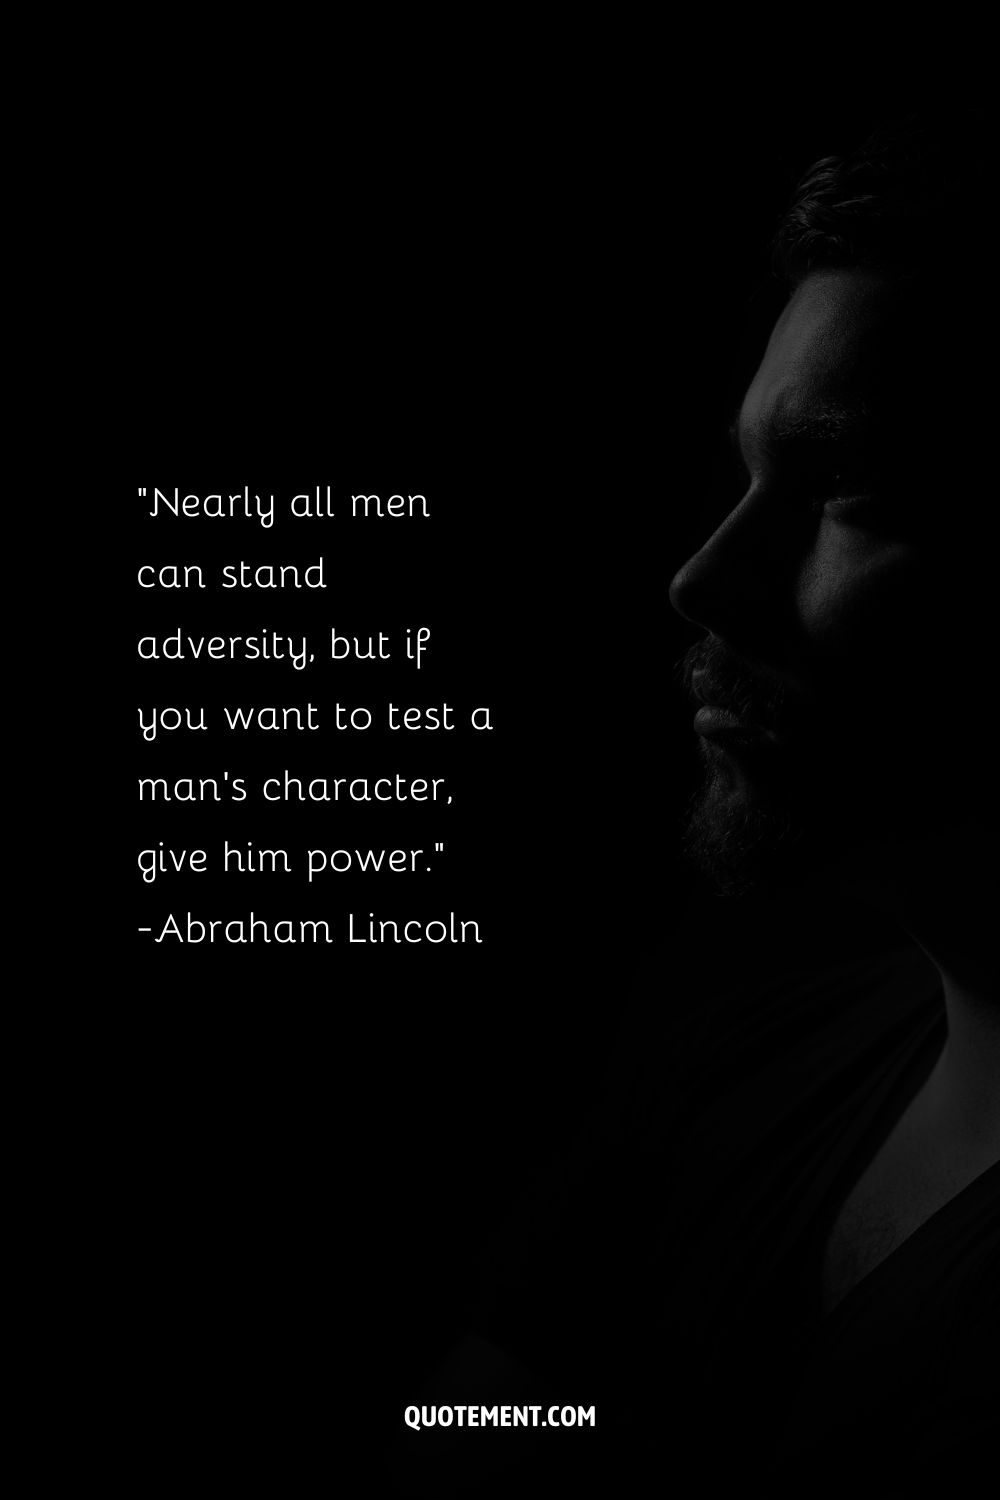 Casi todos los hombres pueden soportar la adversidad, pero si quieres poner a prueba el carácter de un hombre, dale poder